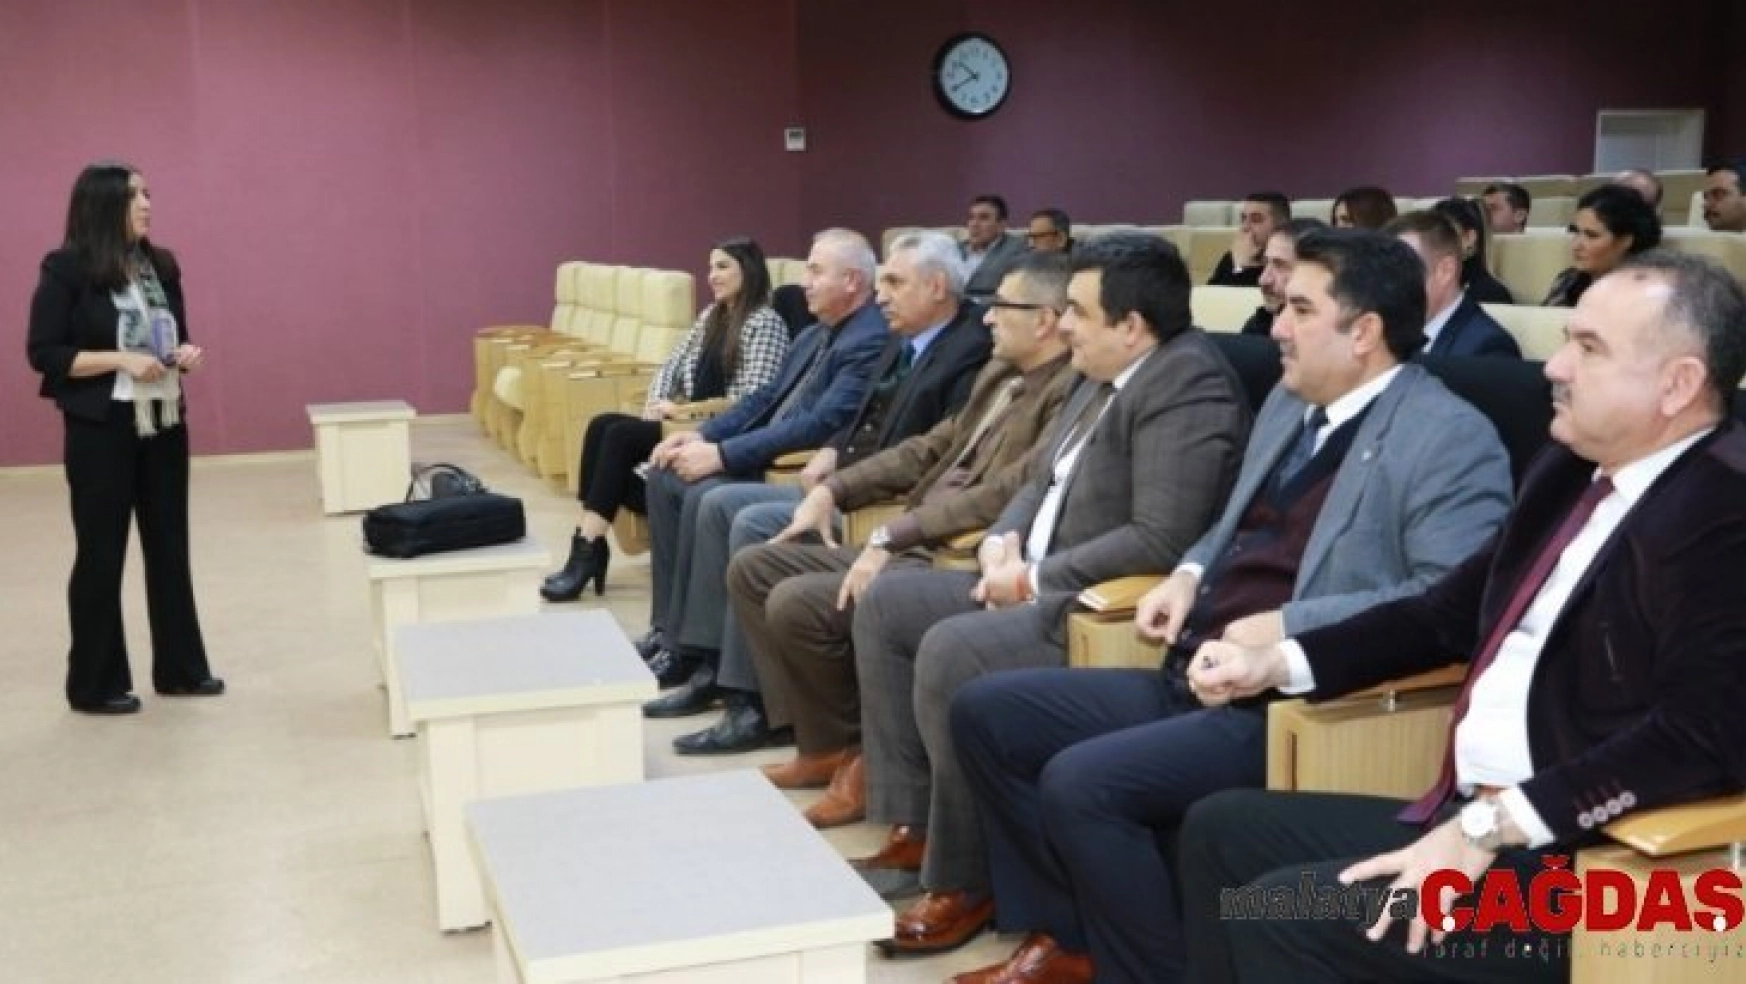 Kırıkkale Belediyesi personeline aile içi iletişim semineri verildi